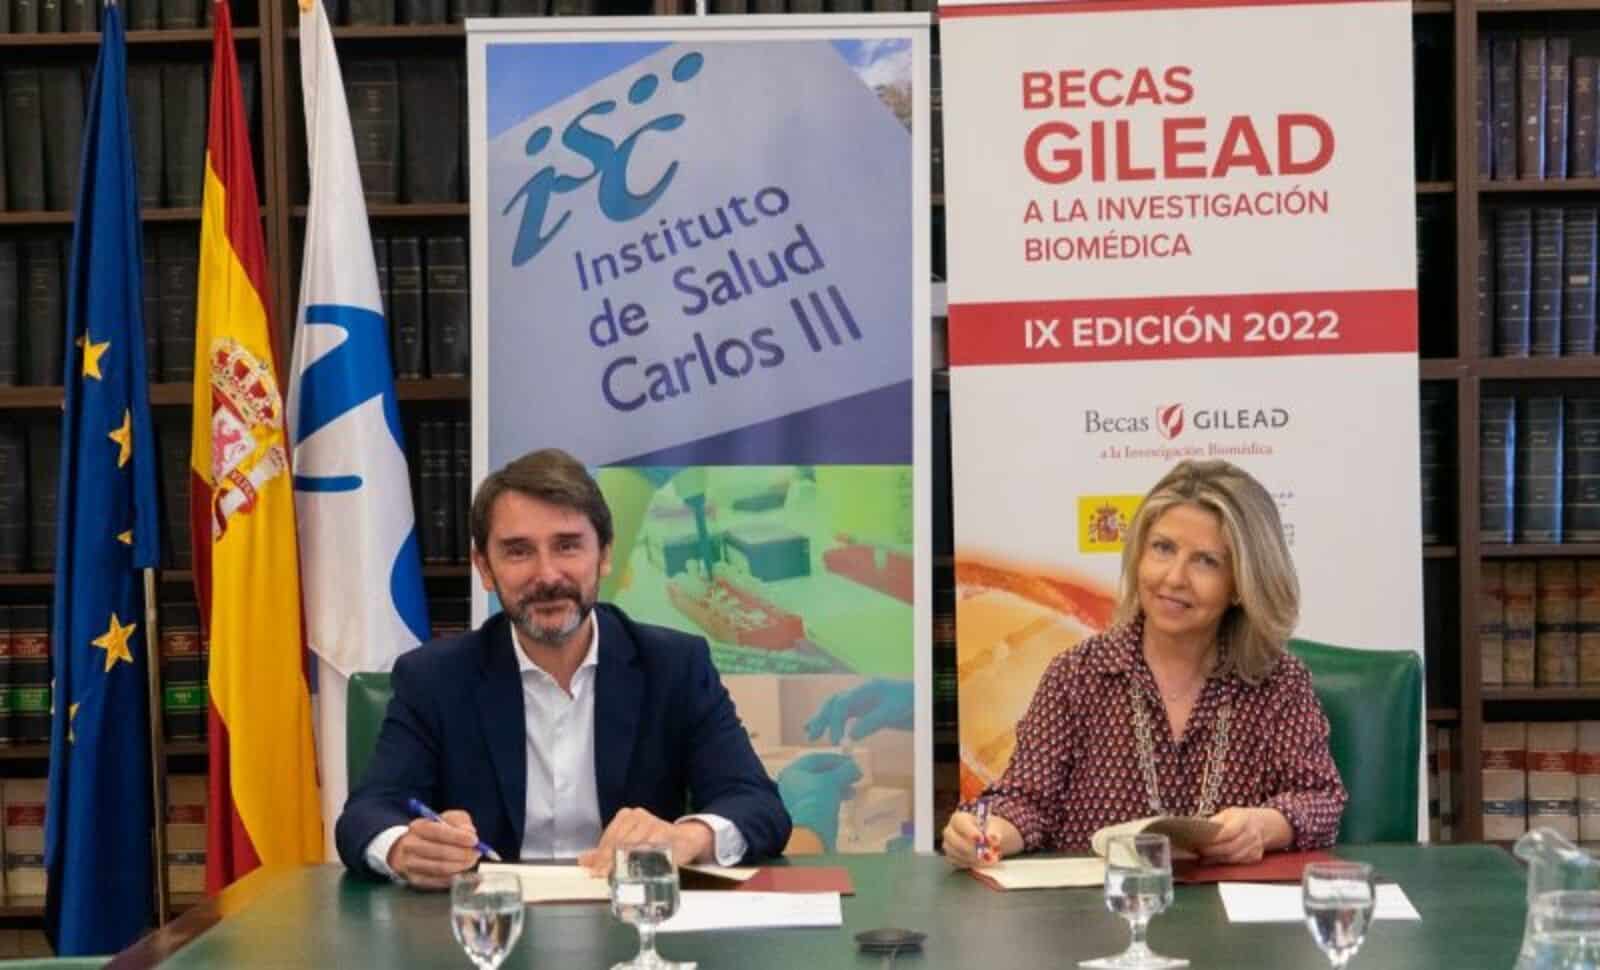 La vicepresidenta y directora general de Gilead España, María Río, y el director general del Instituto de Salud Carlos III (ISCIII), Cristóbal Belda